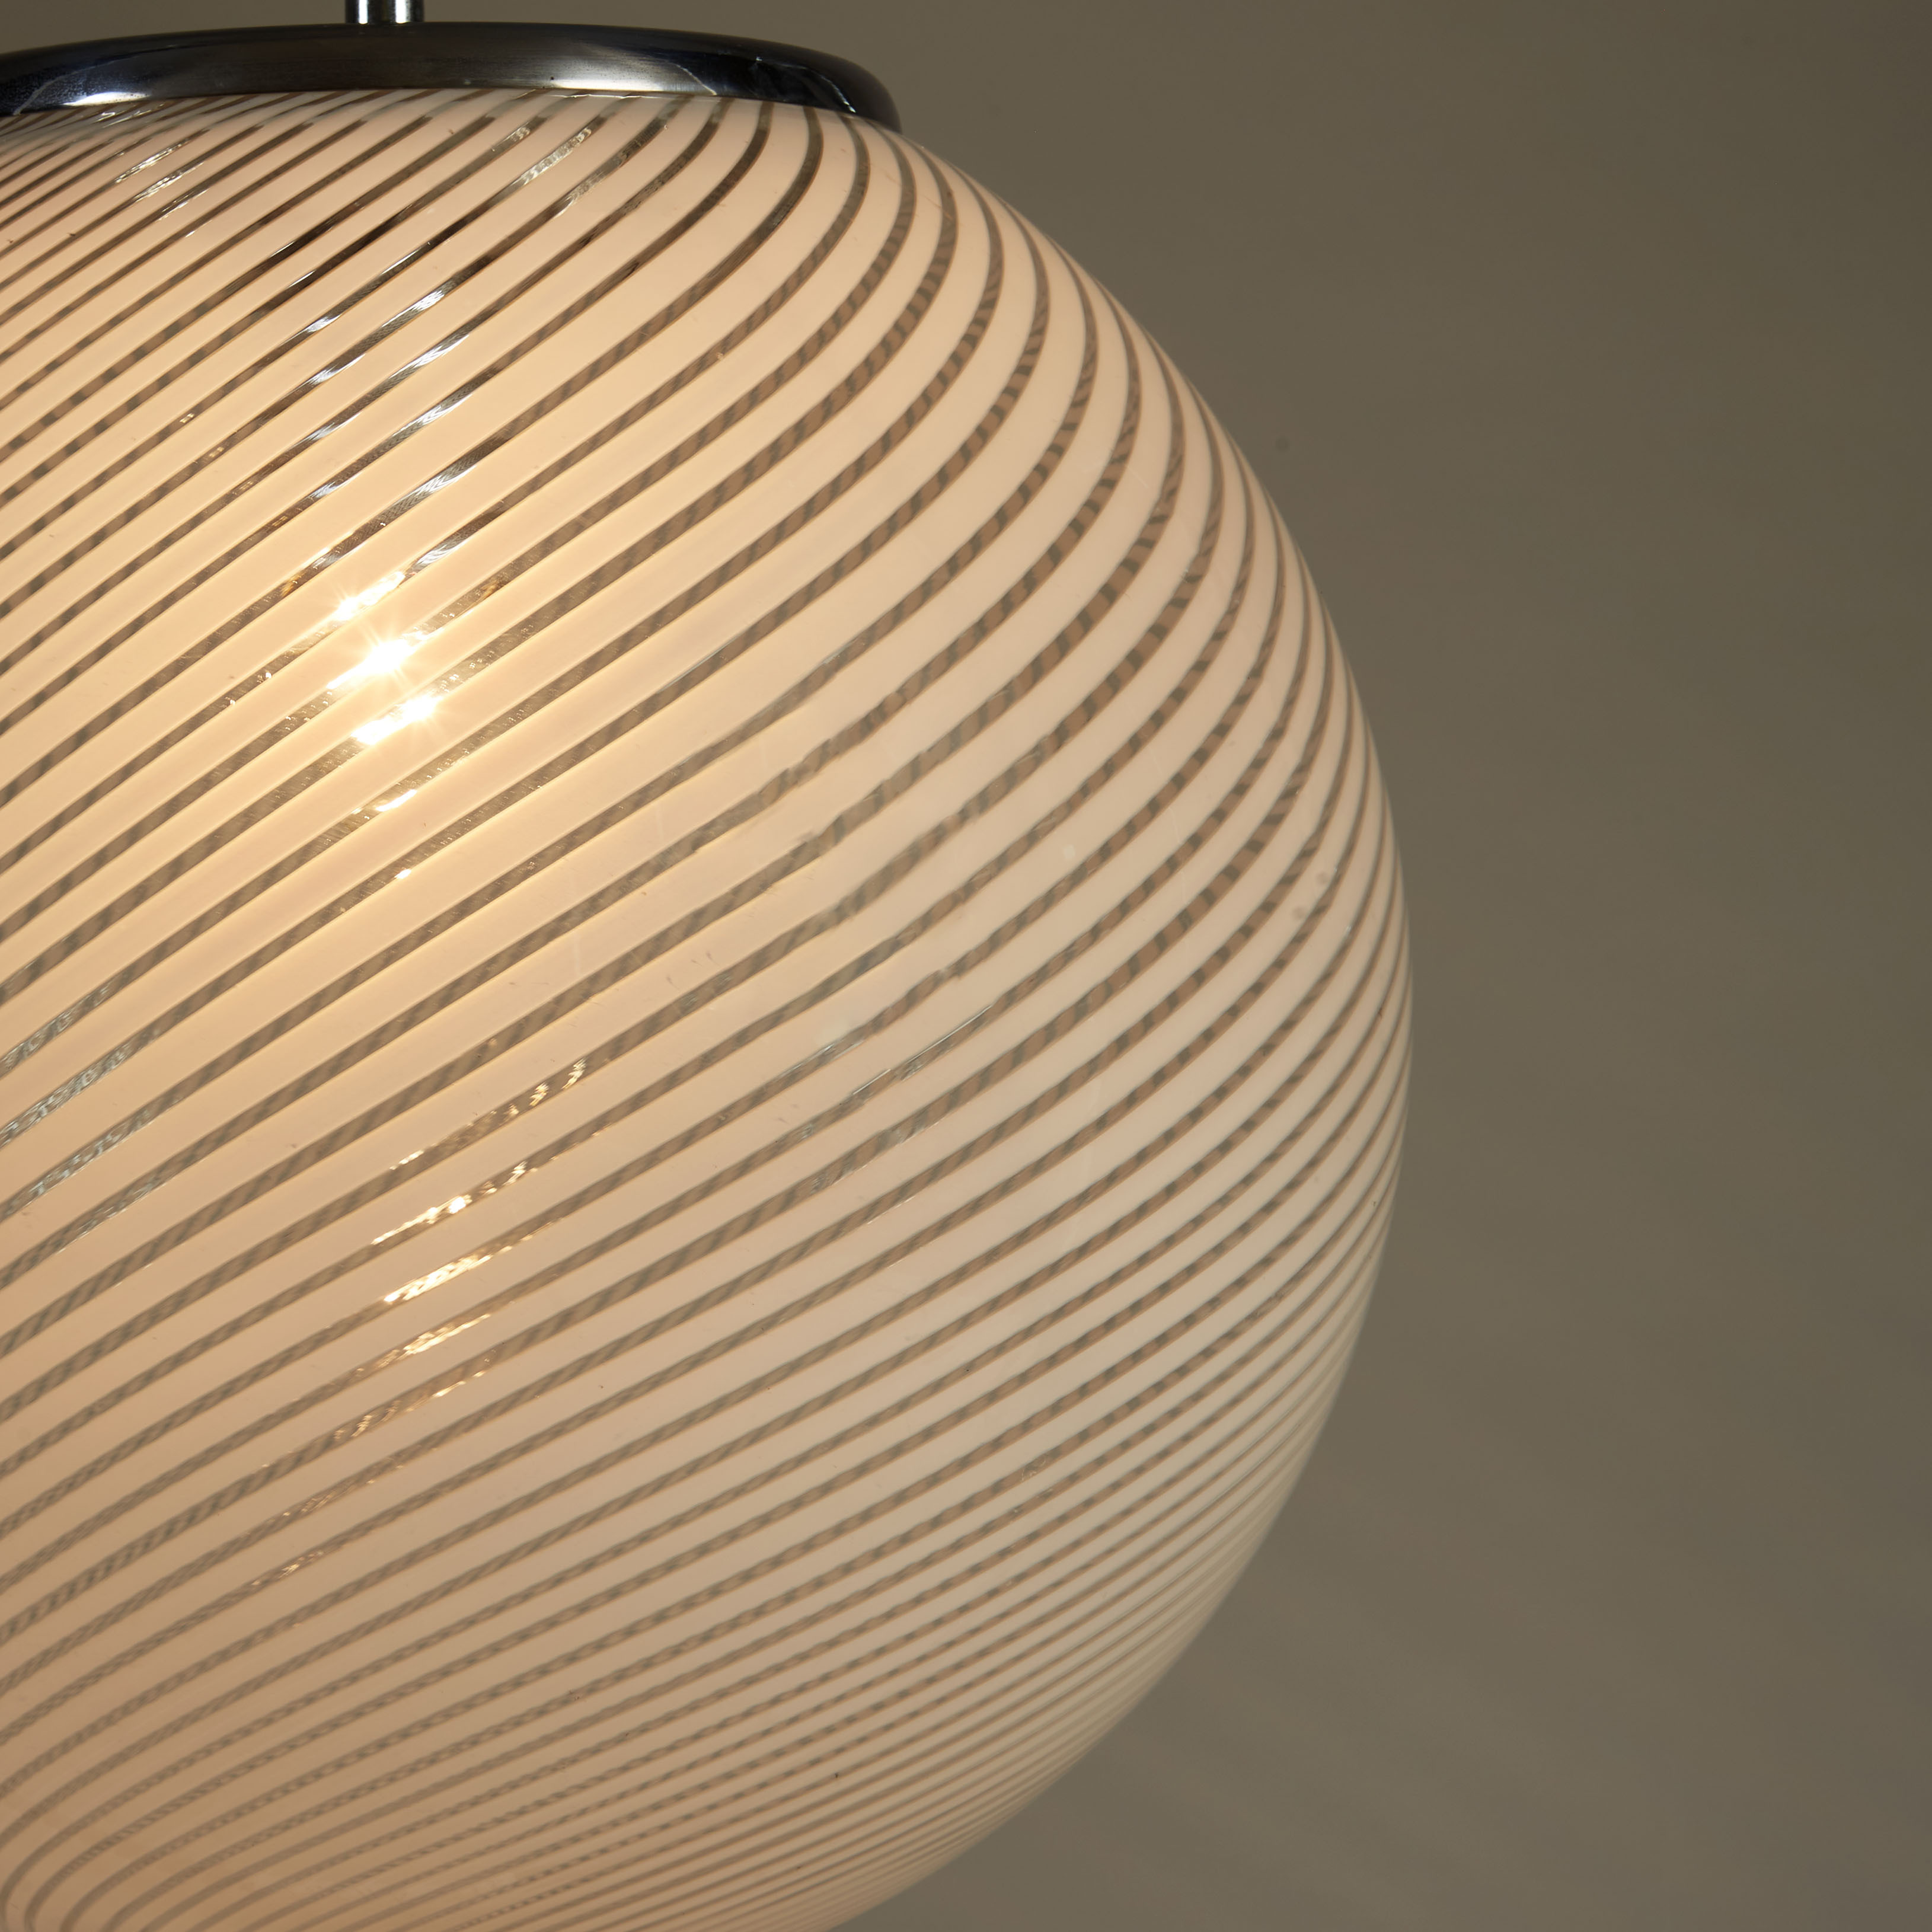 The image for Italian Swirl Ball Lamp 0097 V1